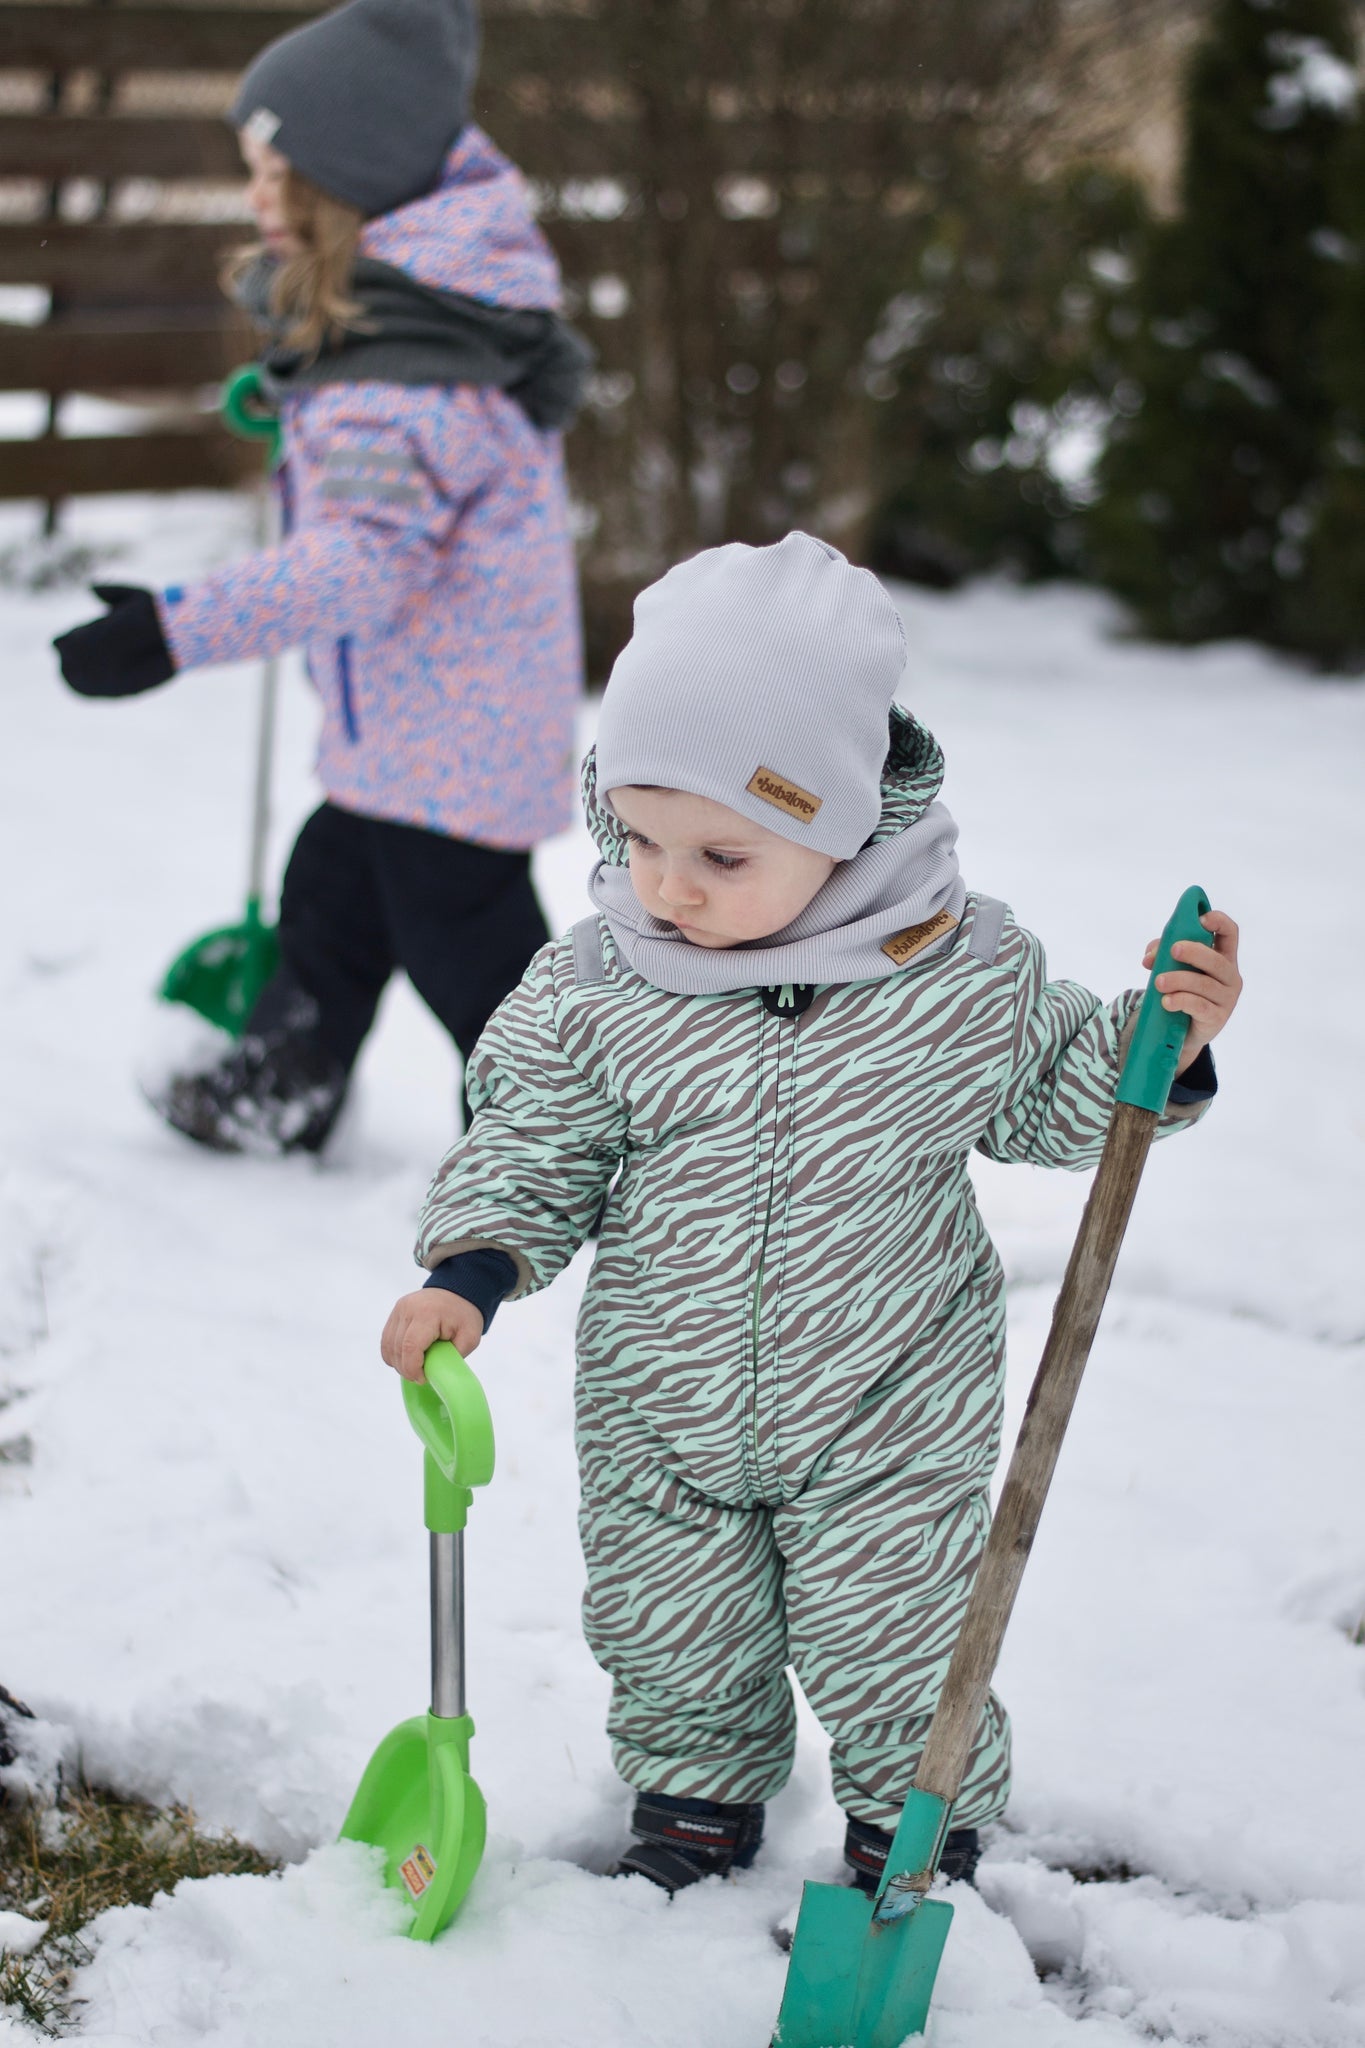 Ducksday zimowy kombinezon dla dzieci do 98cm wzrostu